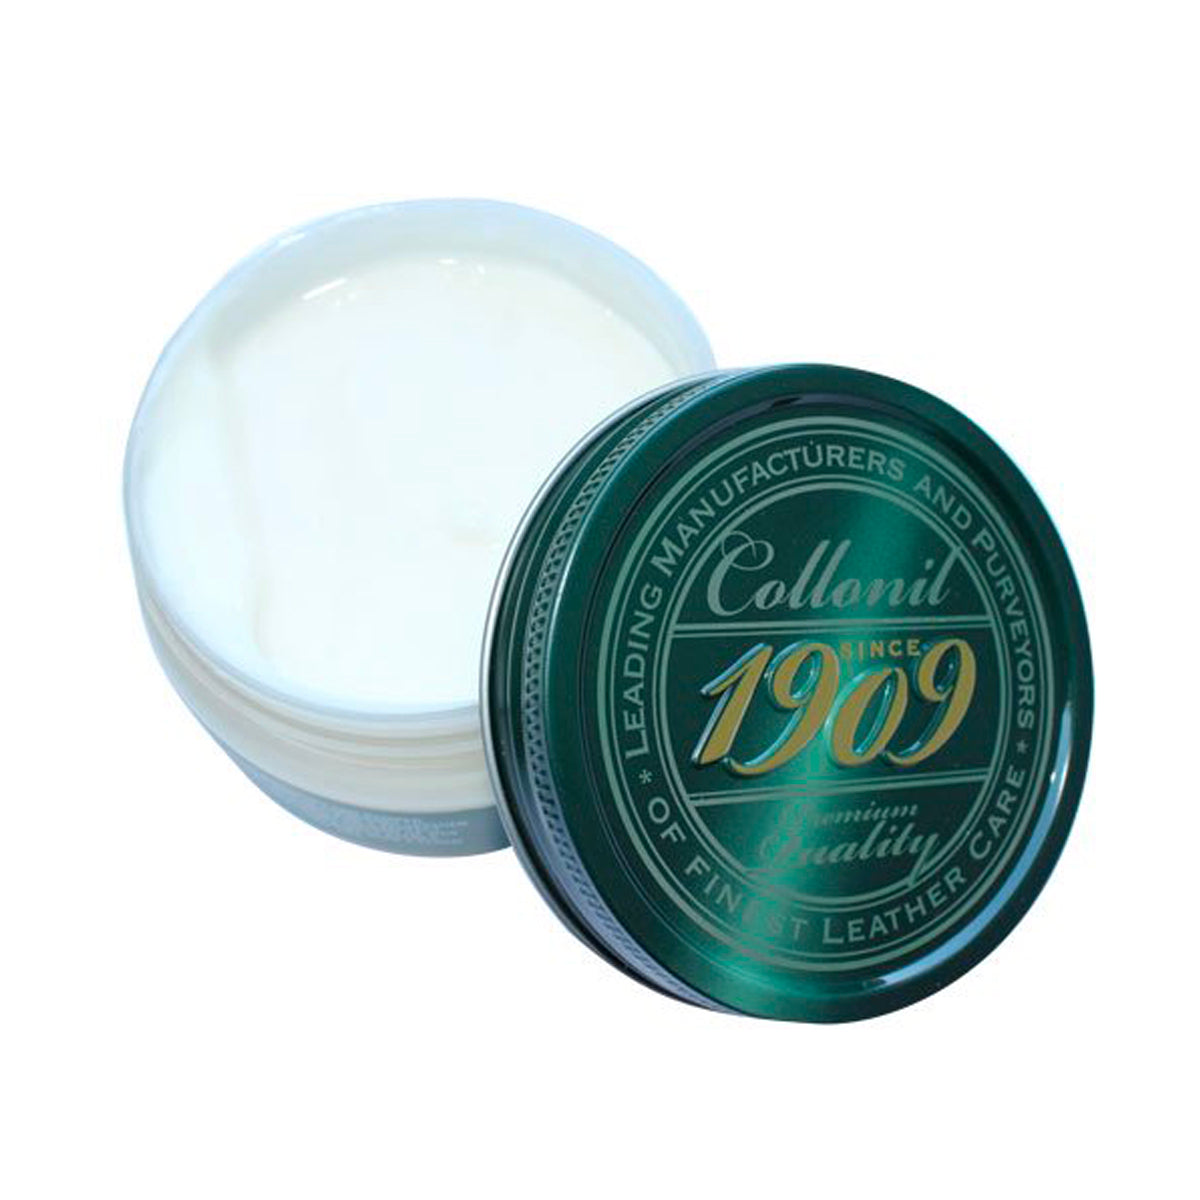 "Collonil" 1909 Supreme Cream Deluxe